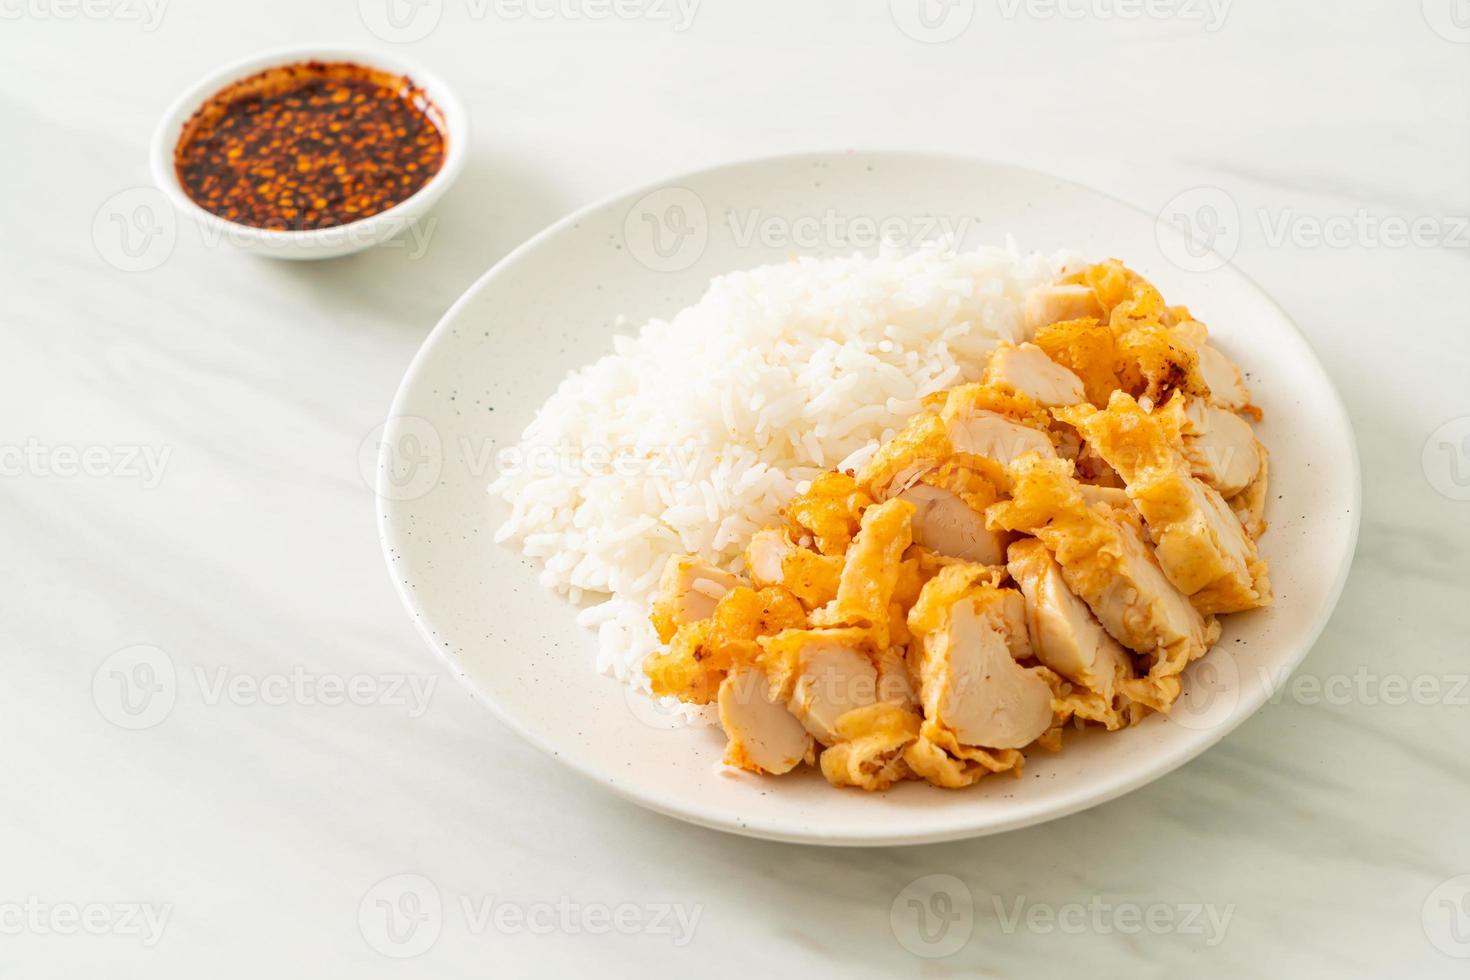 poulet frit garni de riz avec trempette épicée photo